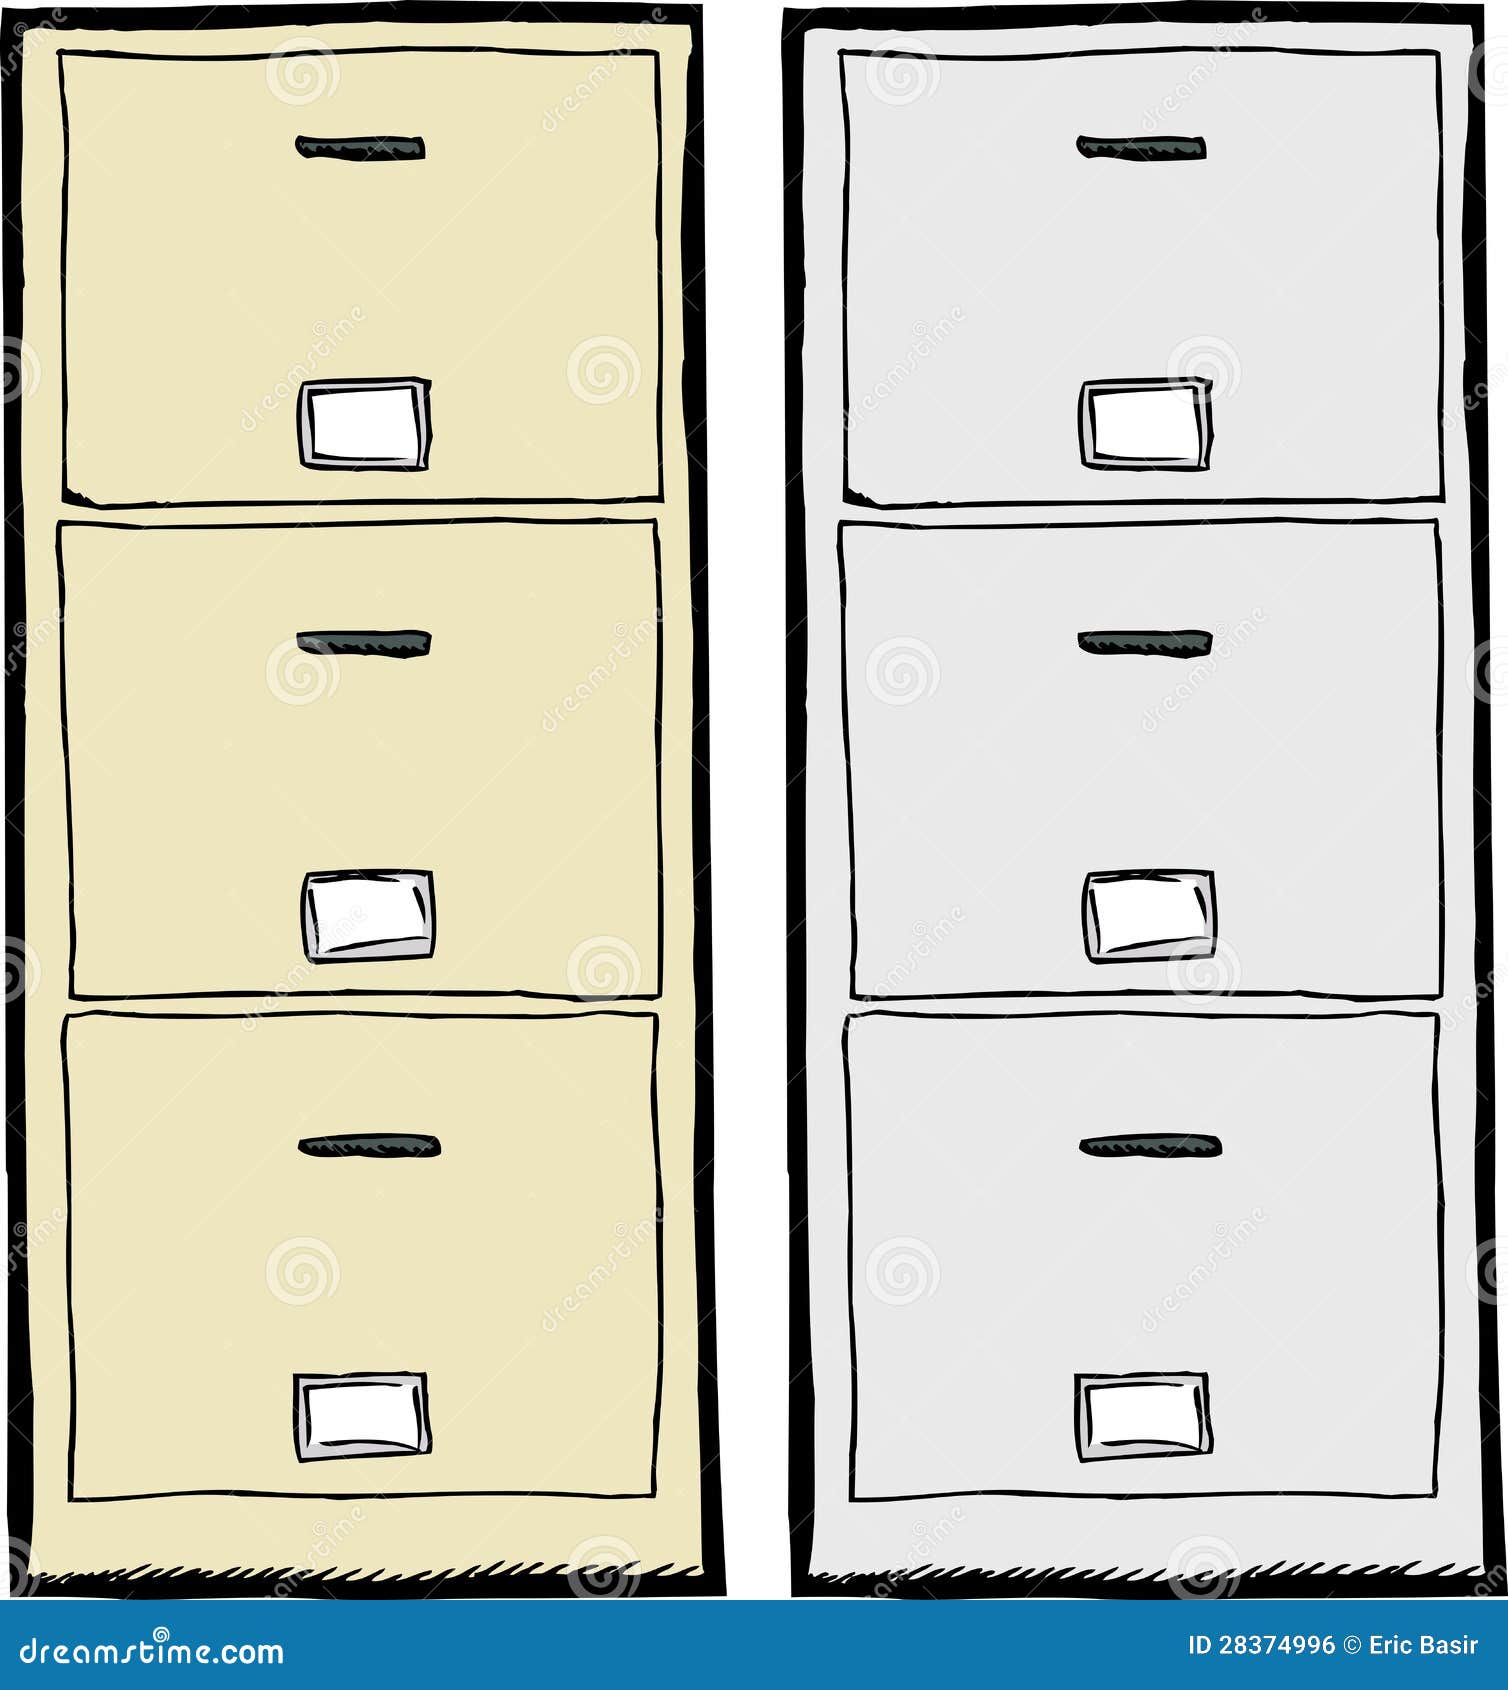 clipart file cabinet icon - photo #31